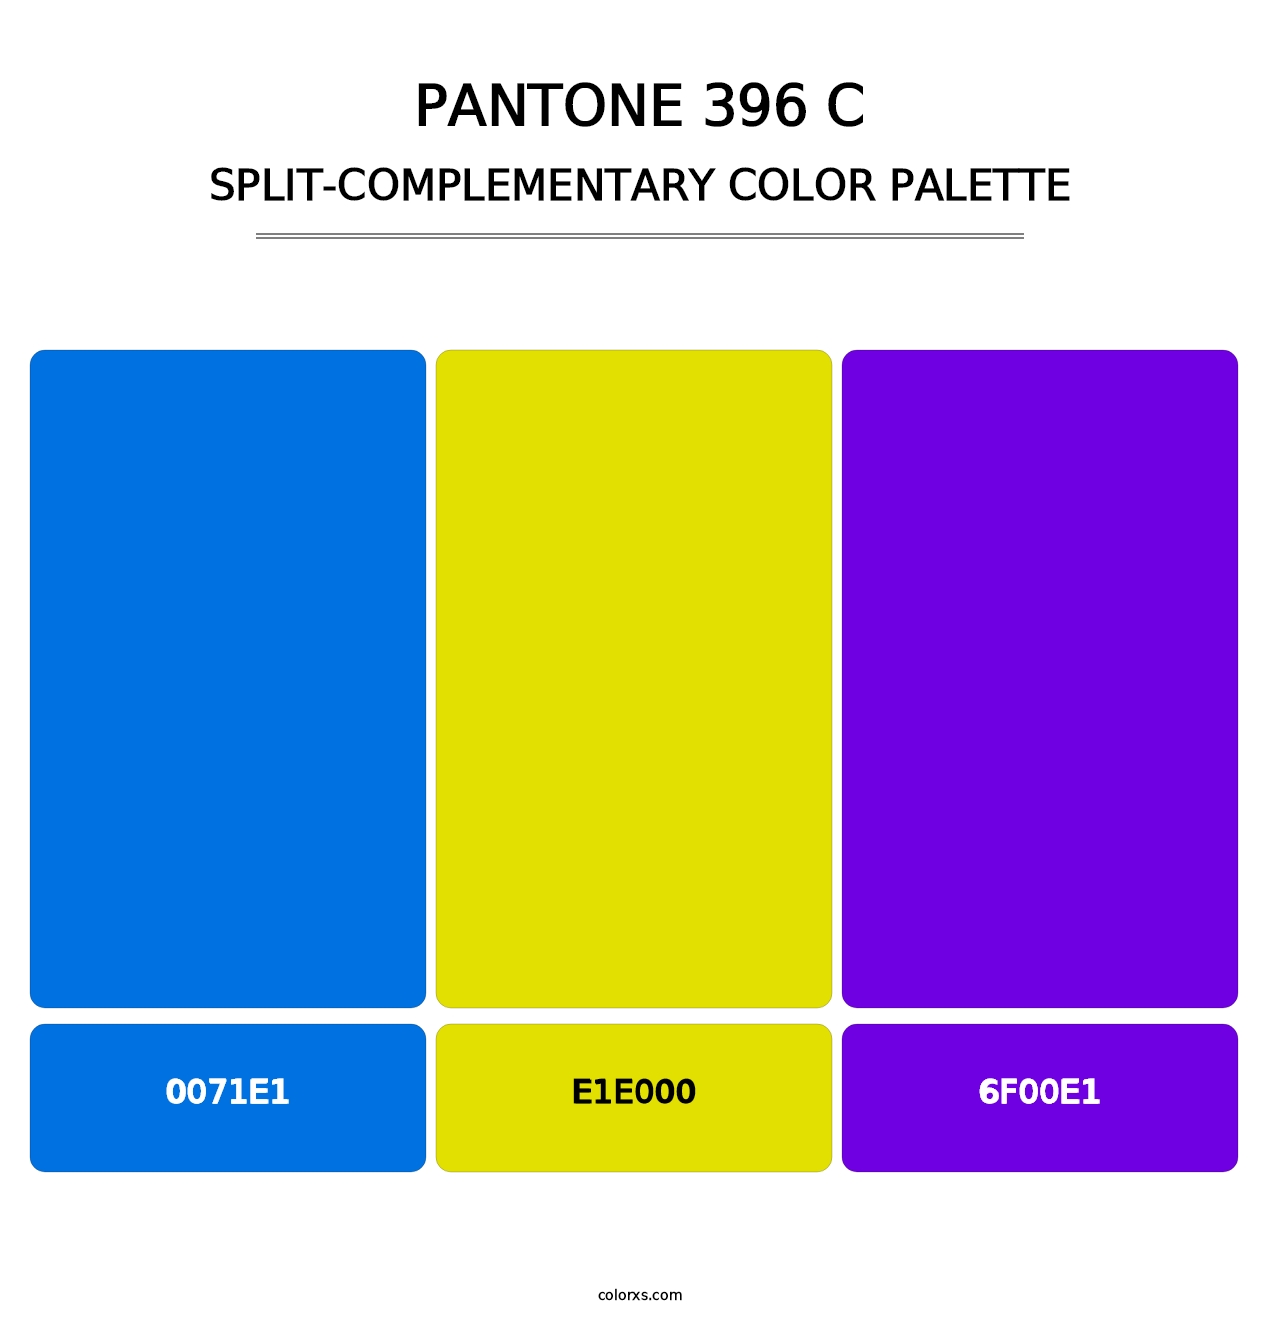 PANTONE 396 C - Split-Complementary Color Palette